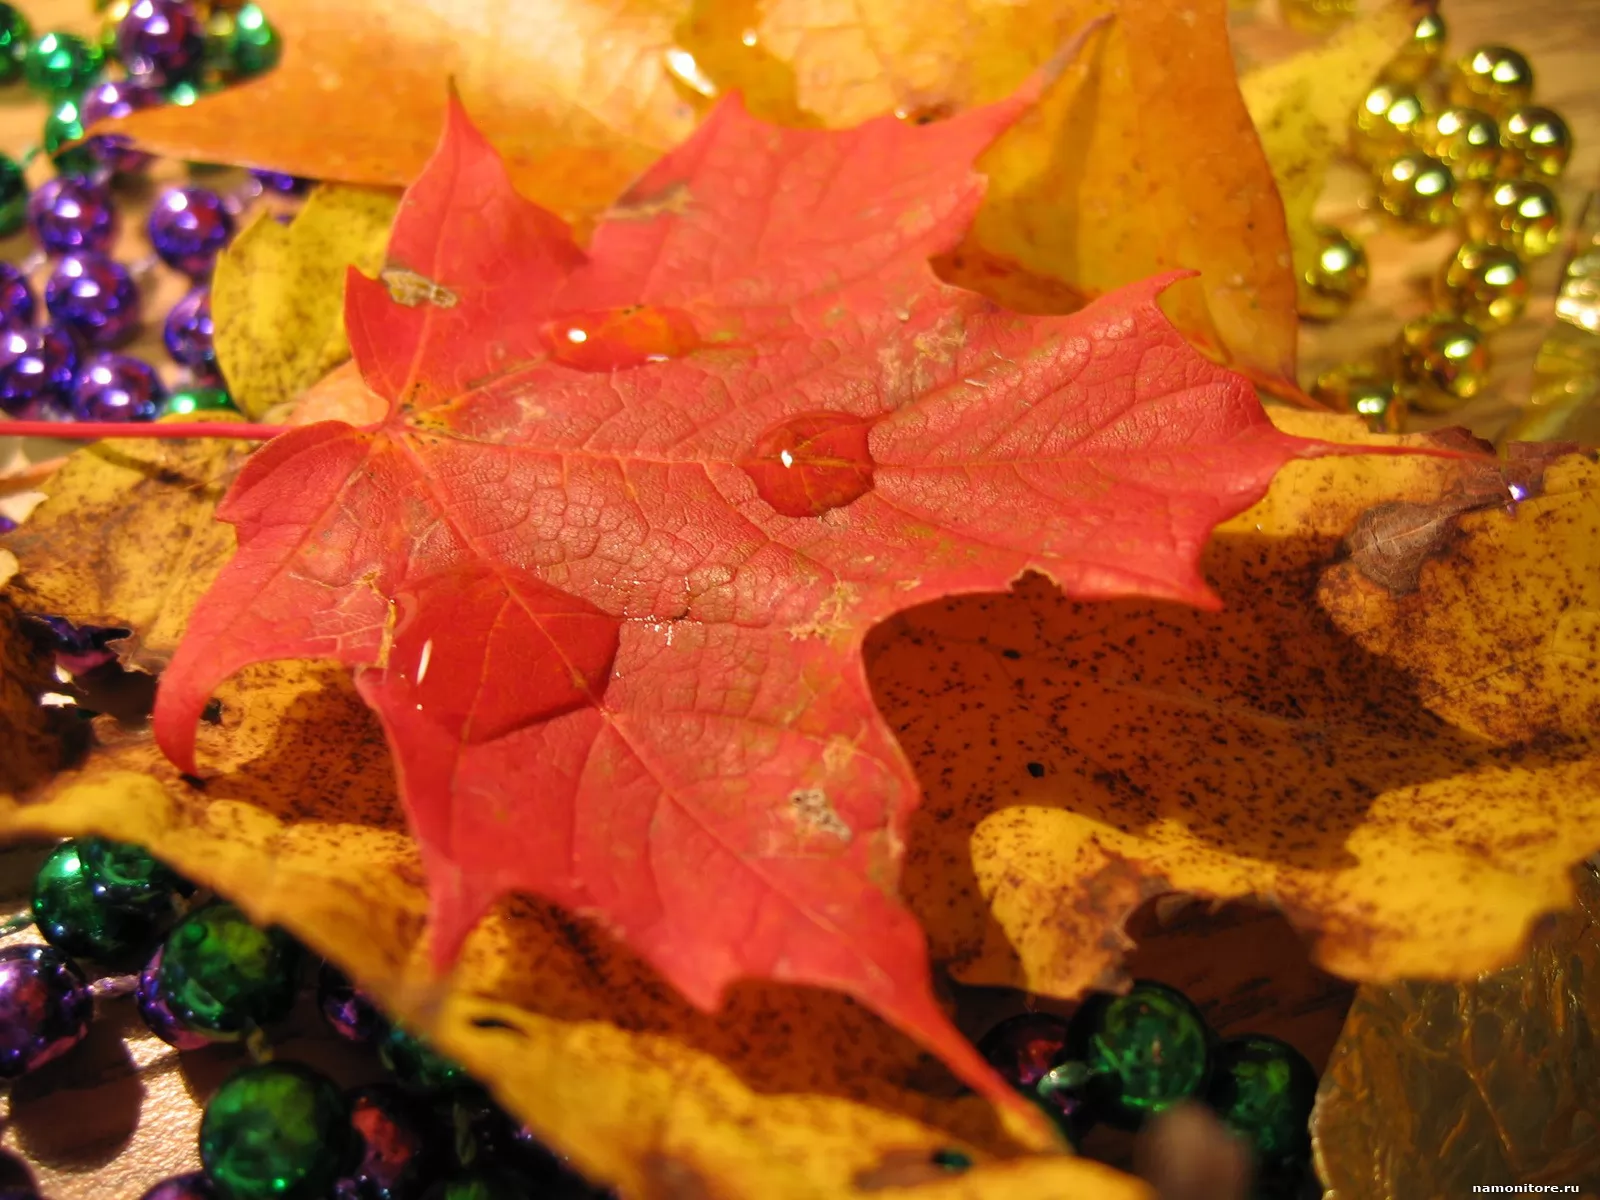 Maple leaves, autumn, nature, orange x